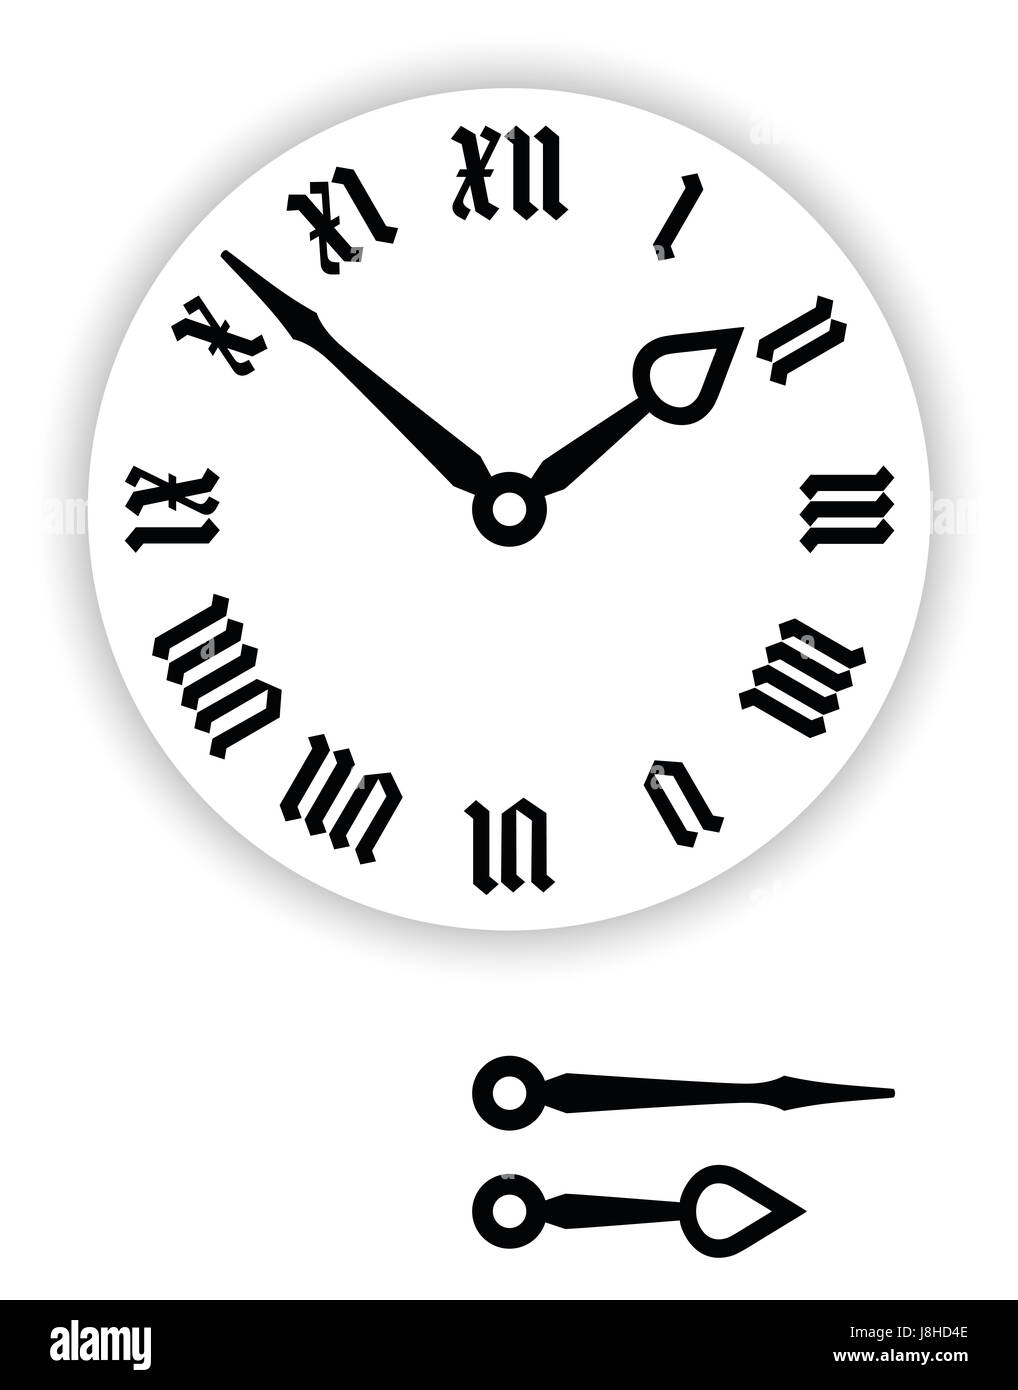 (Les chiffres romains d'horloge. Partie d'horloge analogique avec des pointeurs noir. Cadran avec chiffres romains, gothiques Gothique Textura ou minuscule aussi. Banque D'Images